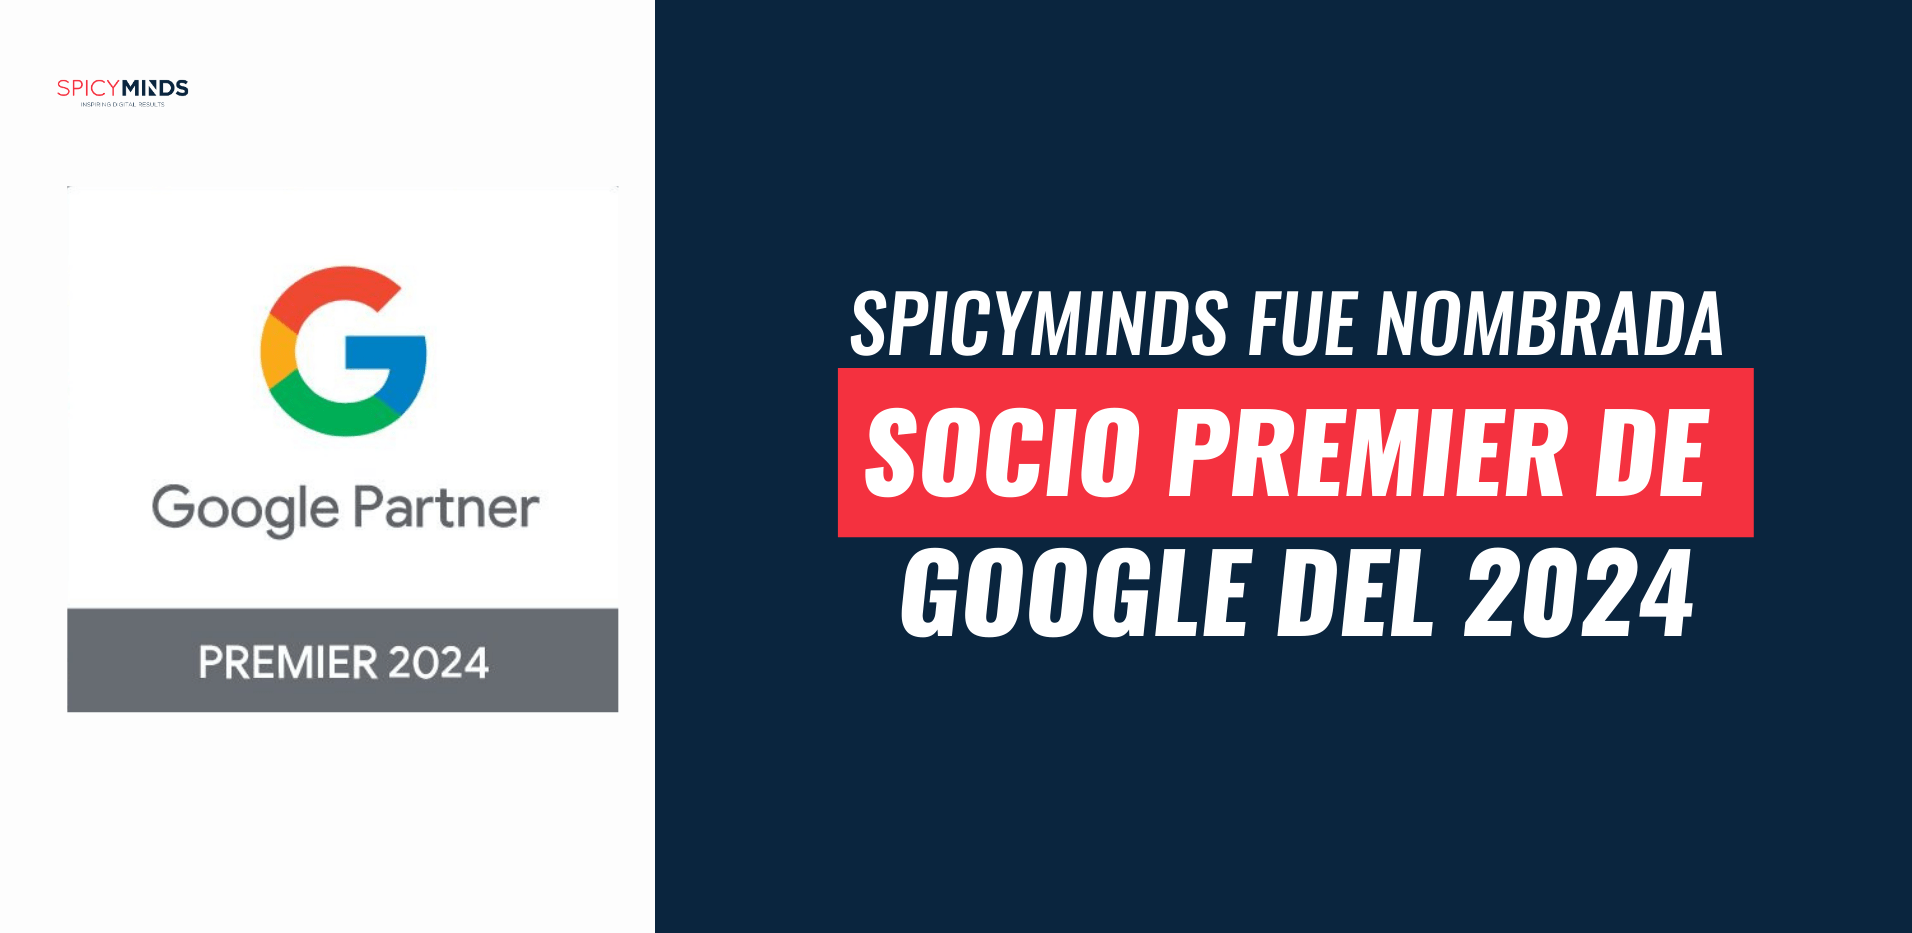 Imagen: SpicyMinds fue nombrada Socio Premier de Google del 2024